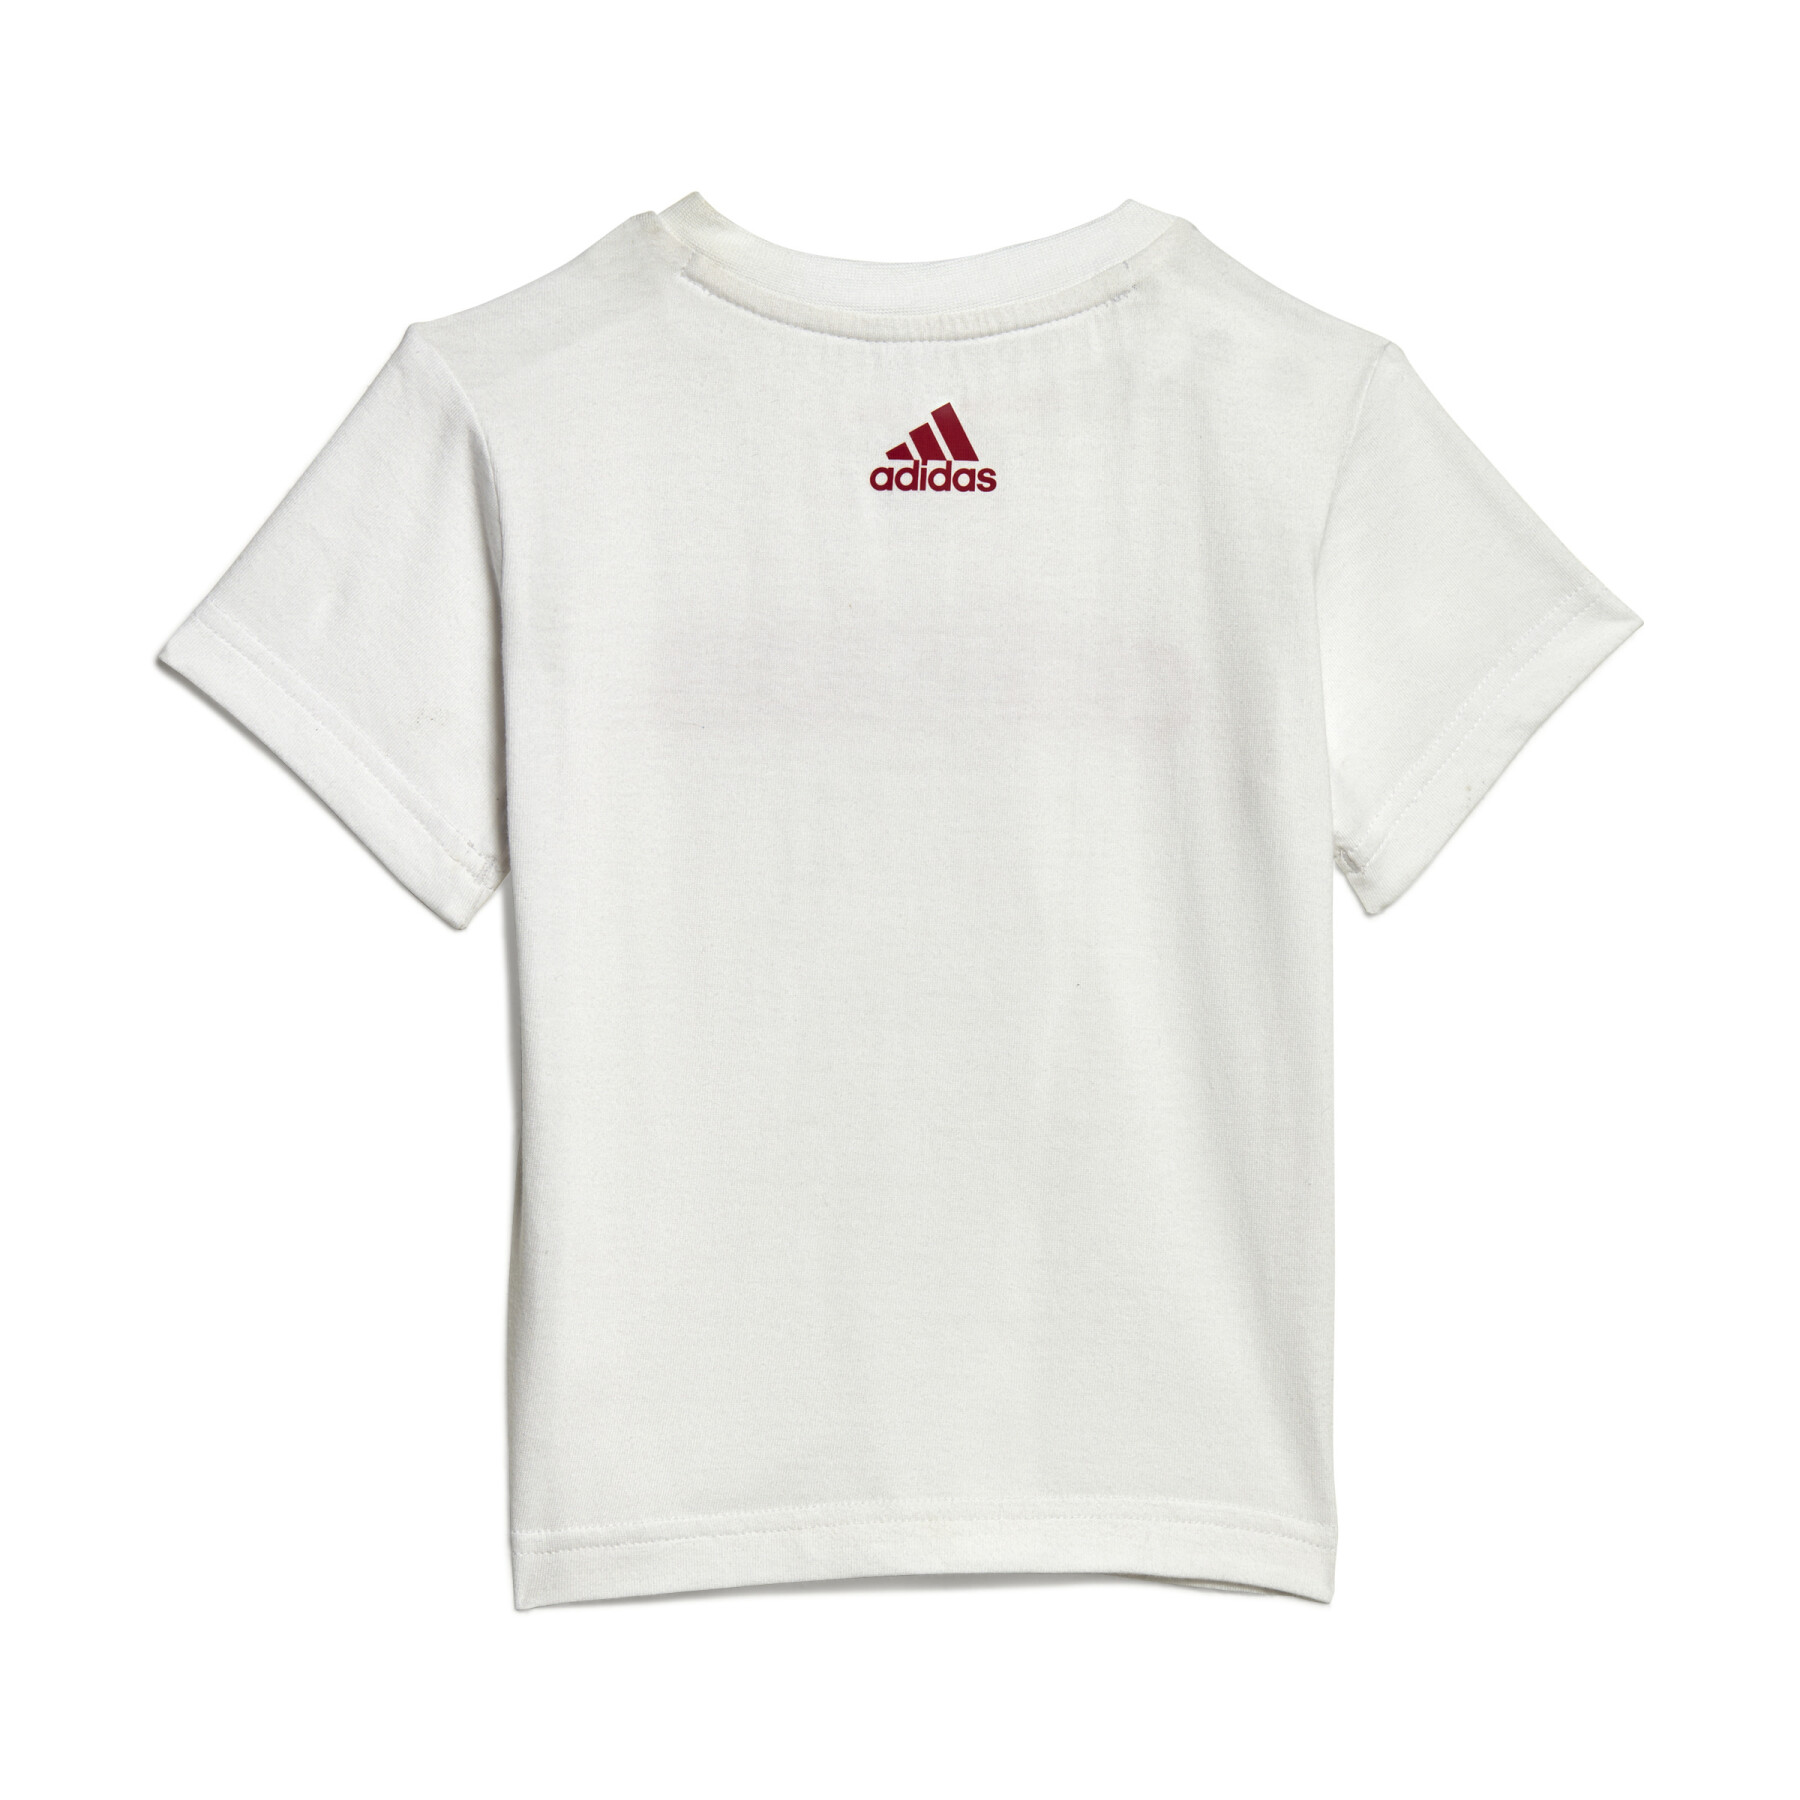 T-shirt och shorts i ekologisk bomull för baby adidas 3-Stripes Essentials Lineage